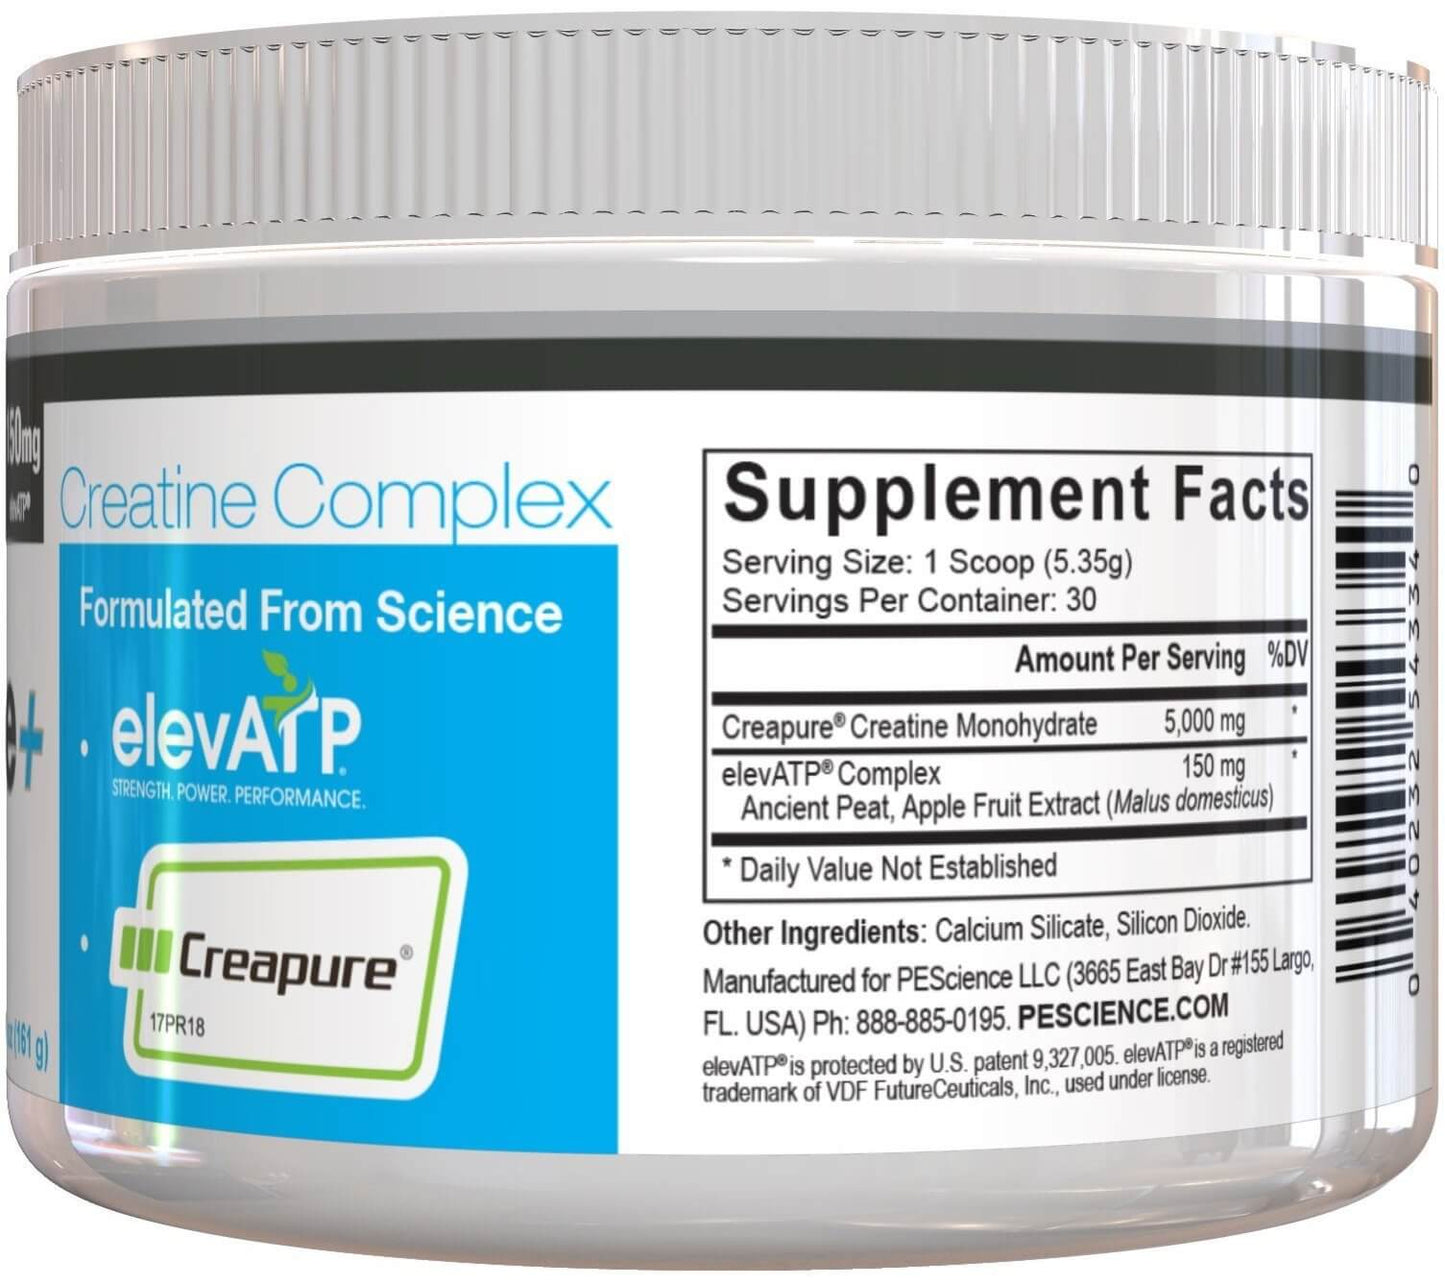 trucreatine-powder-supplement-pescience-671217_1800x1800